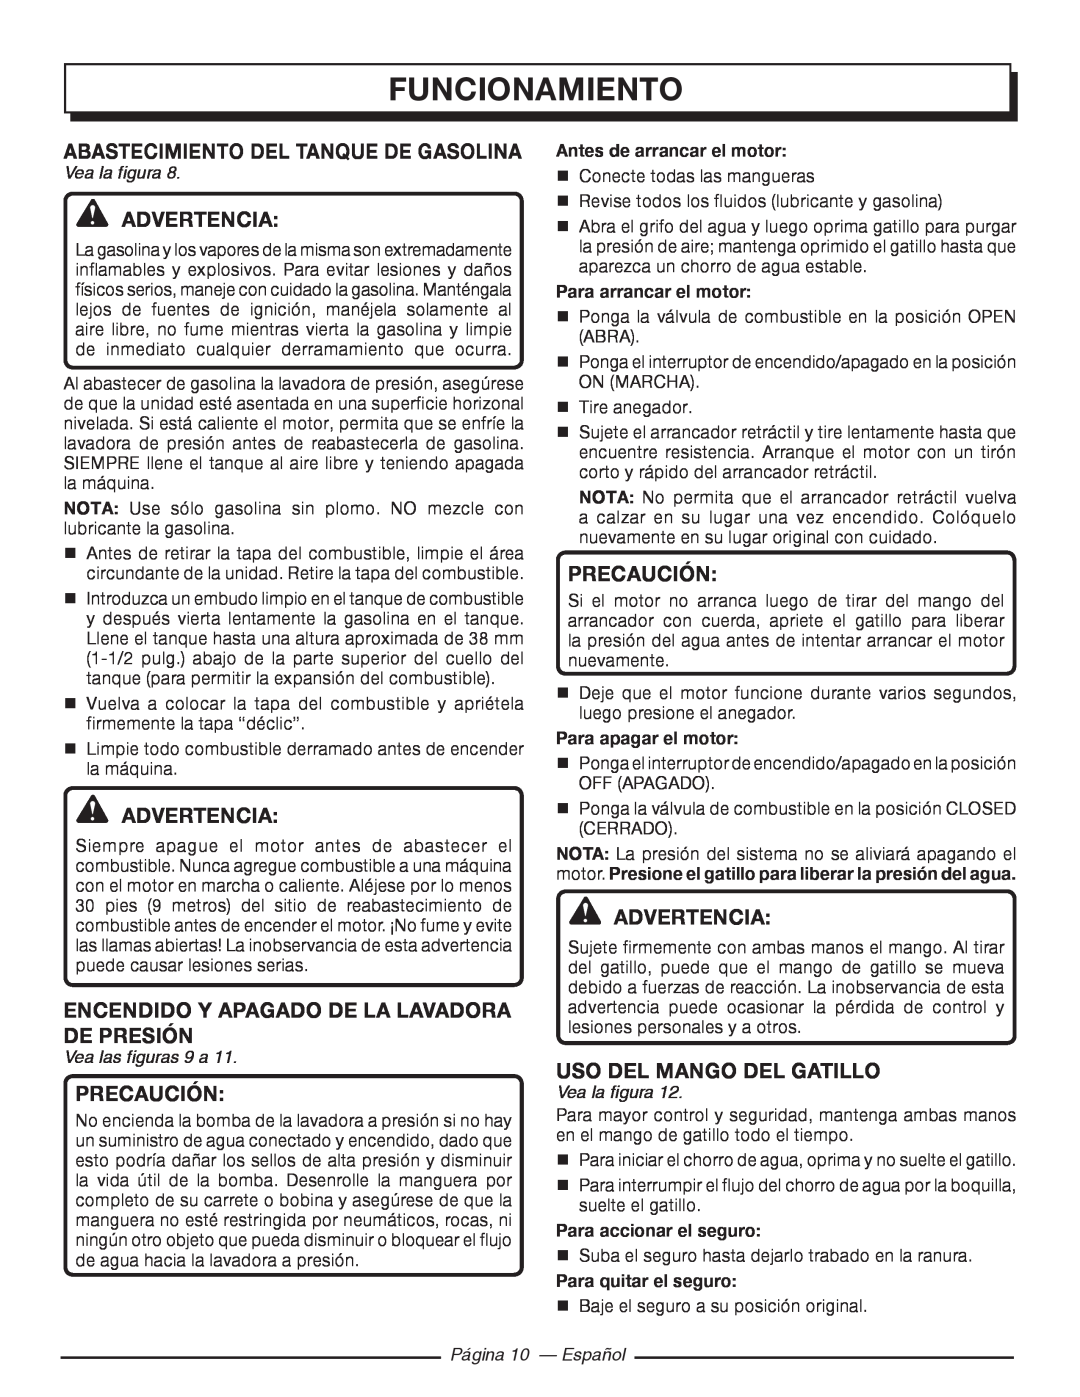 Homelite UT80993 Funcionamiento, Abastecimiento Del Tanque De Gasolina, Advertencia, Precaución, Uso Del Mango Del Gatillo 